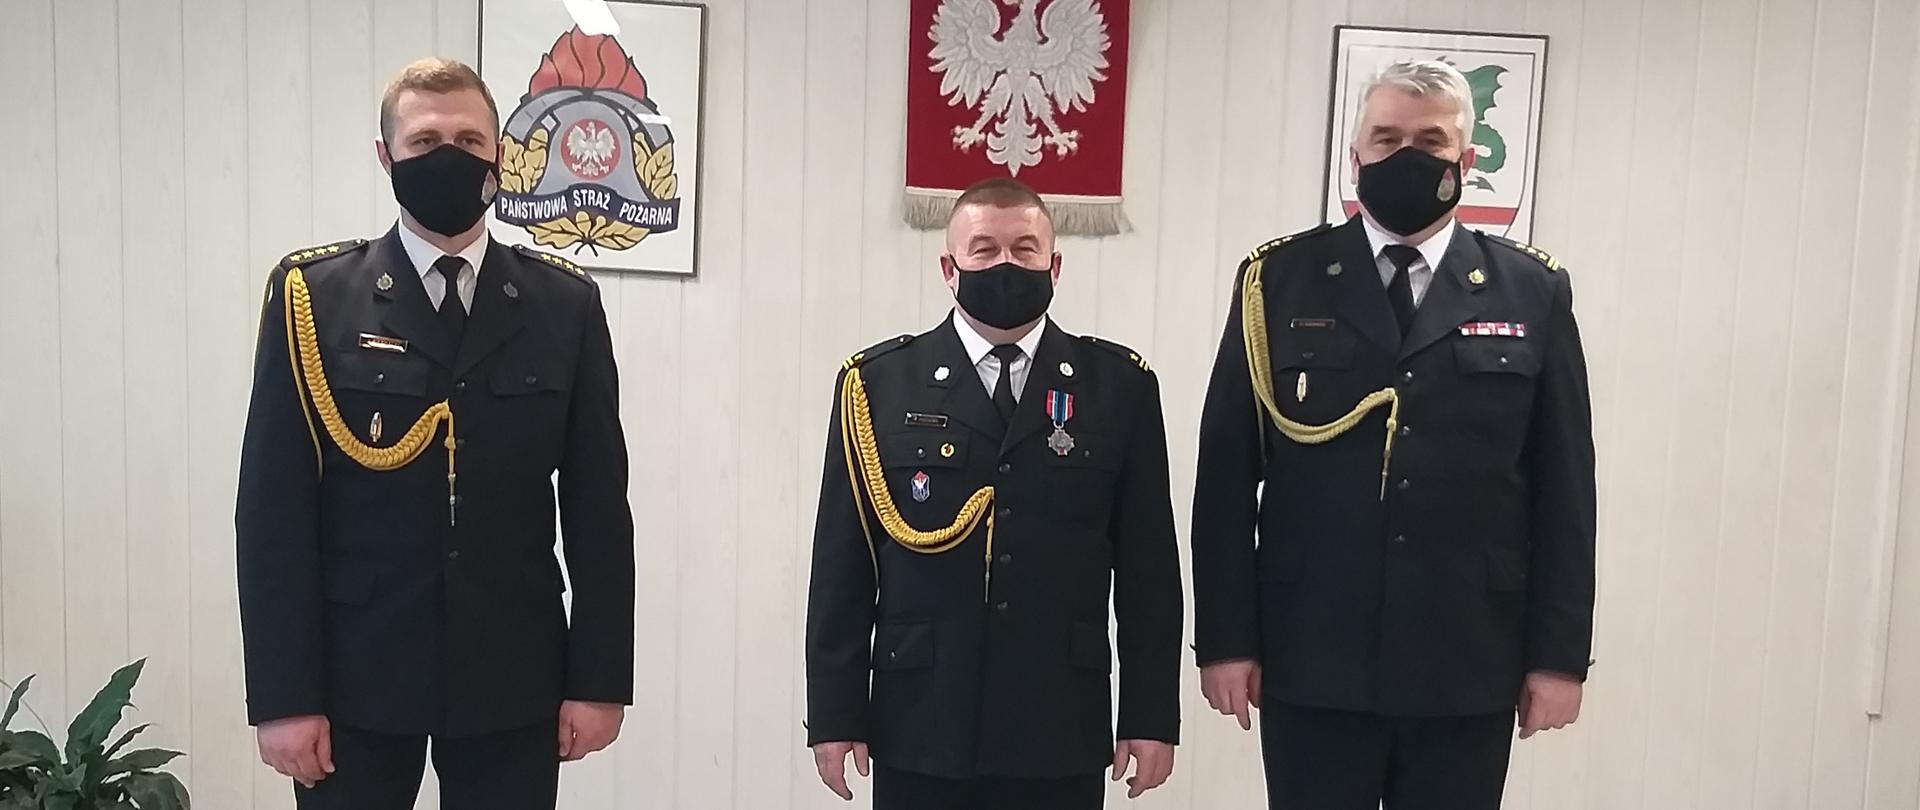 Trzech funkcjonariuszy ubranych w mundur galowy stojących w sali konferencyjnej. W tle na ścianie wisi godło Rzeczypospolitej. logo PSP oraz goło starostwa.